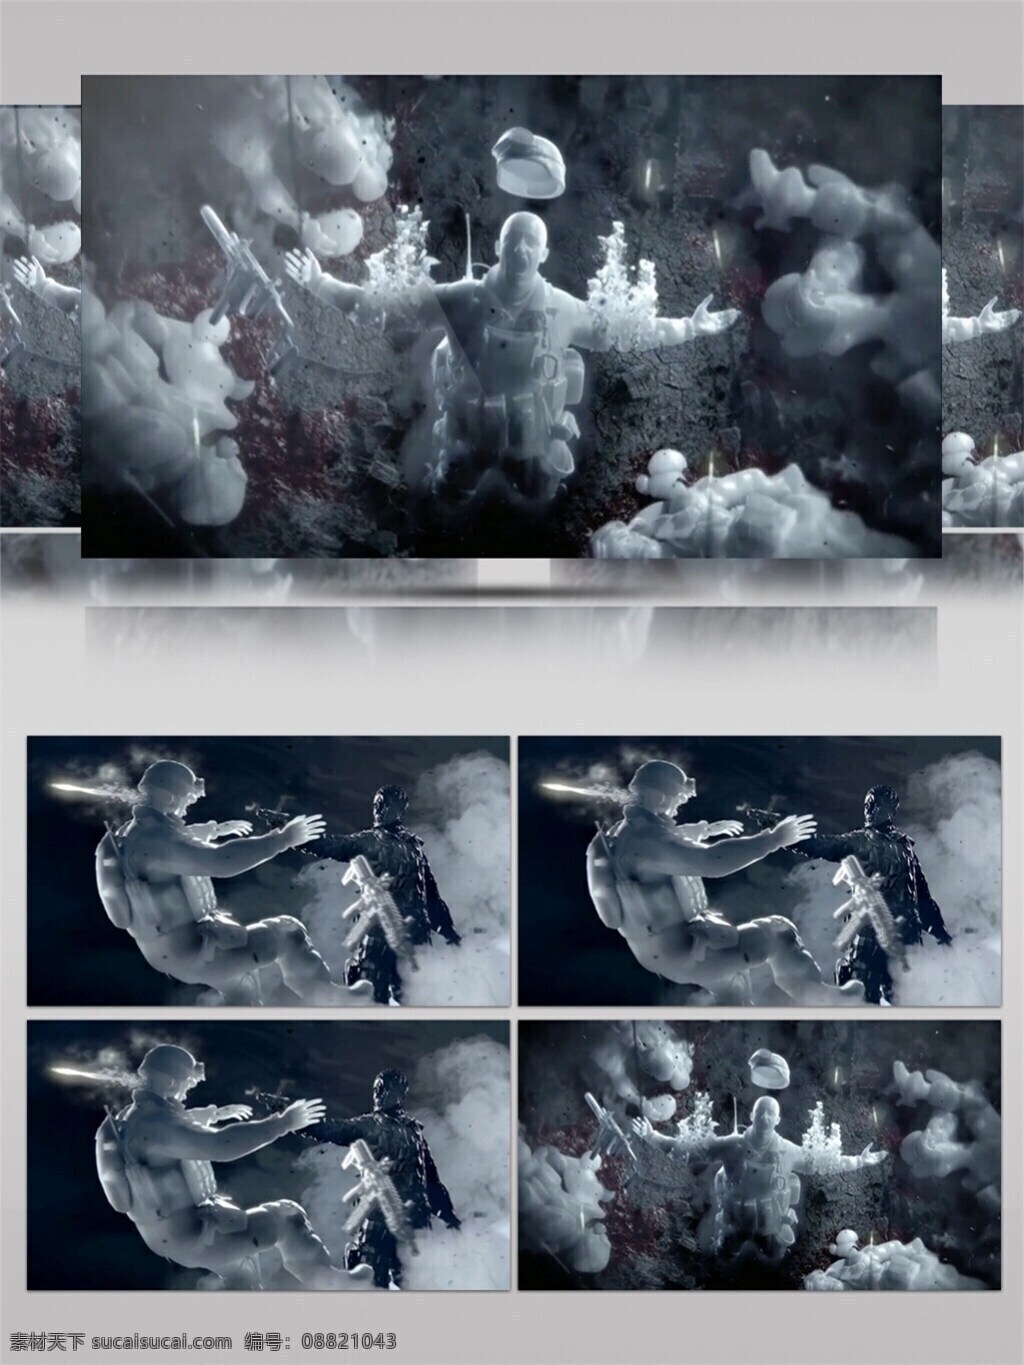 迷幻 烟雾 高清 视频 炫酷灰色 抽象烟雾 生活抽象 动态抽象 画面意境